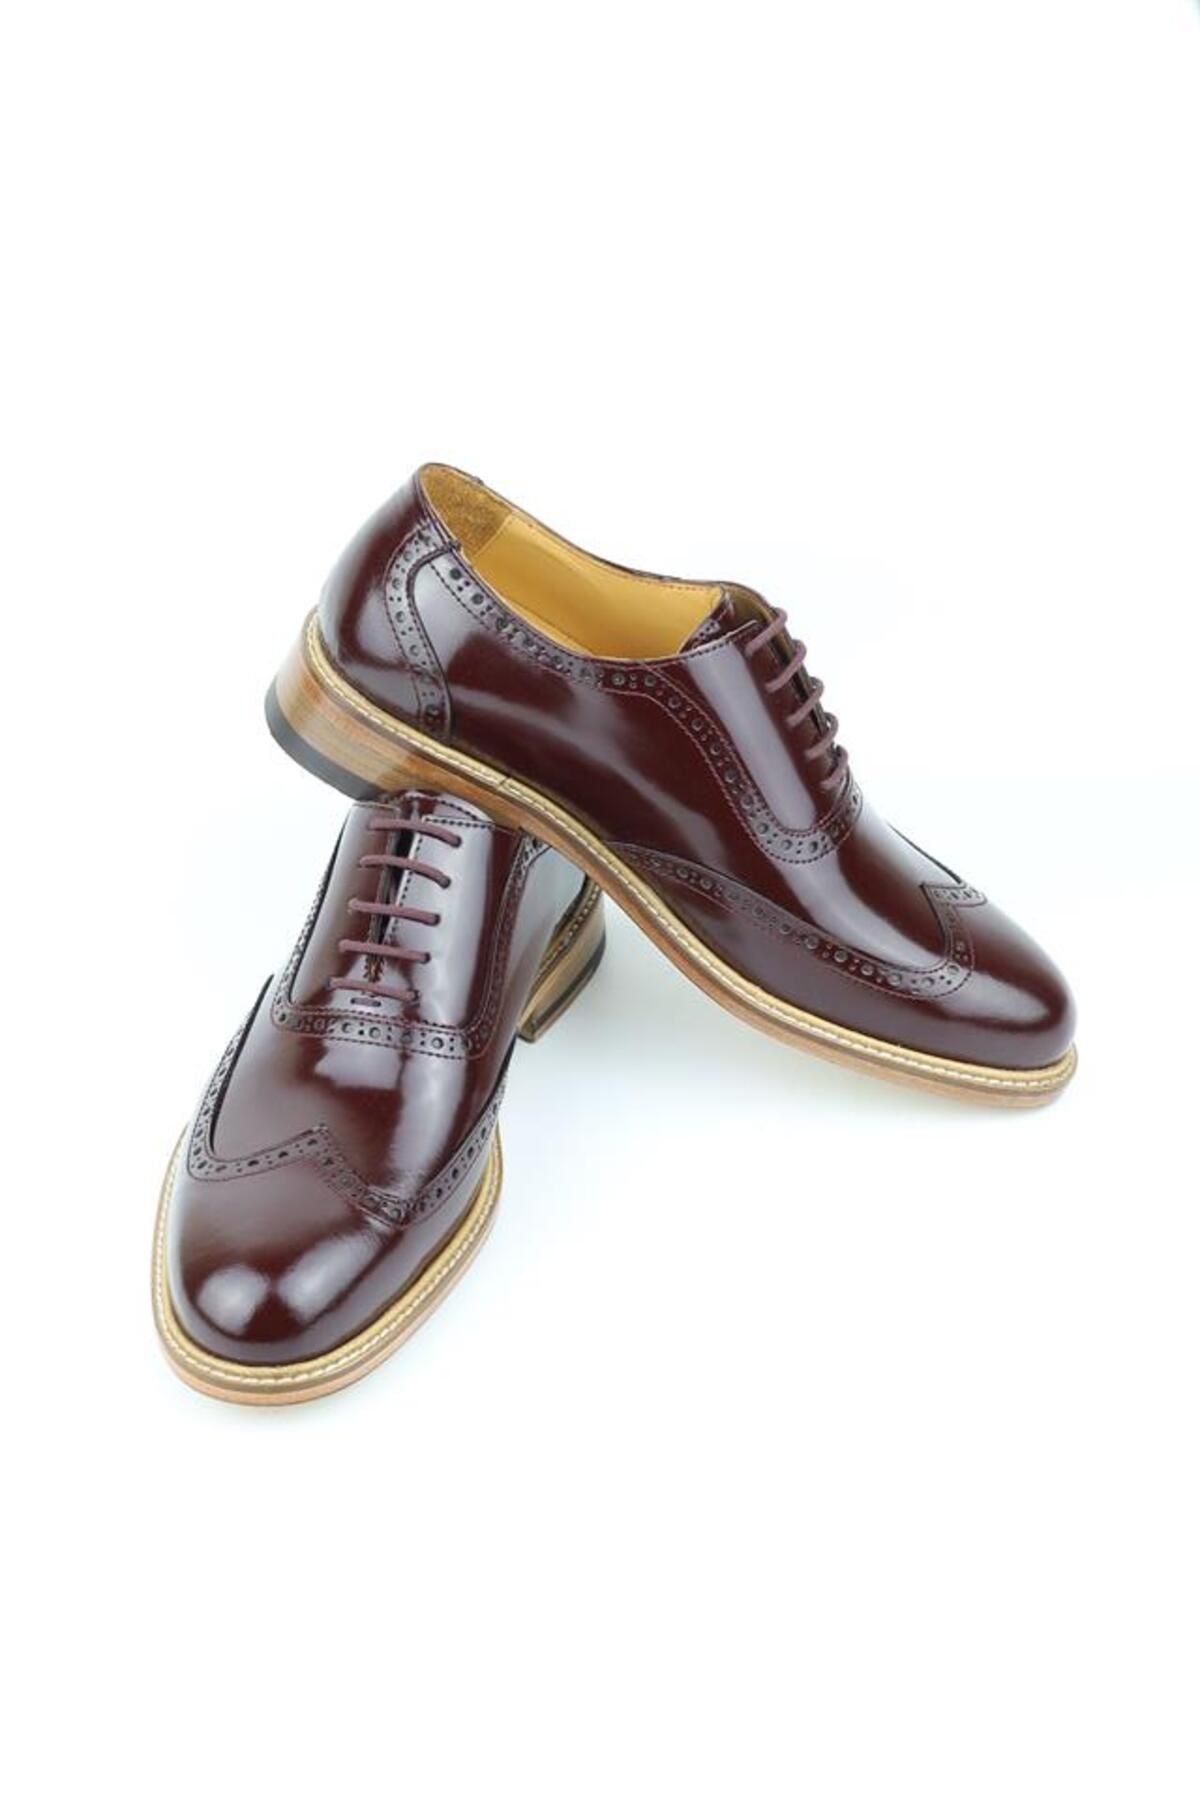 HARRY MANSON Model 072 Hakiki Açma Deri Erkek Klasik Ayakkabı